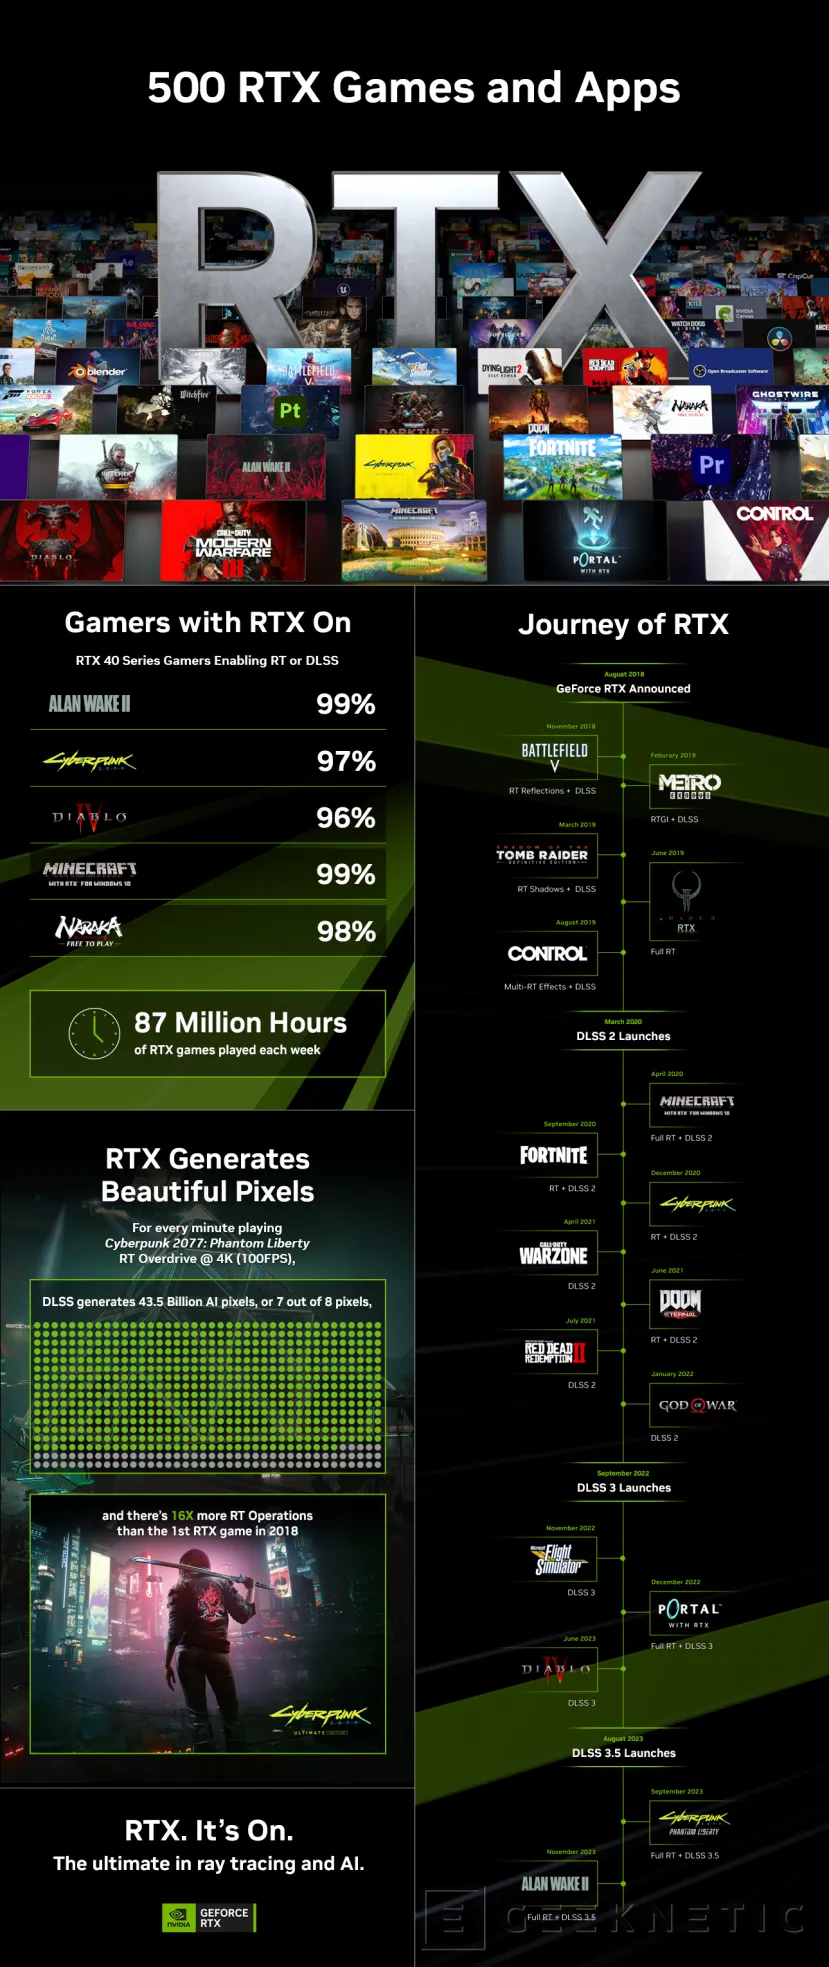 Geeknetic Ya Hay 500 Juegos y Aplicaciones con Soporte para RTX y NVIDIA lo Celebra con Premios de hasta 500 Dólares 3